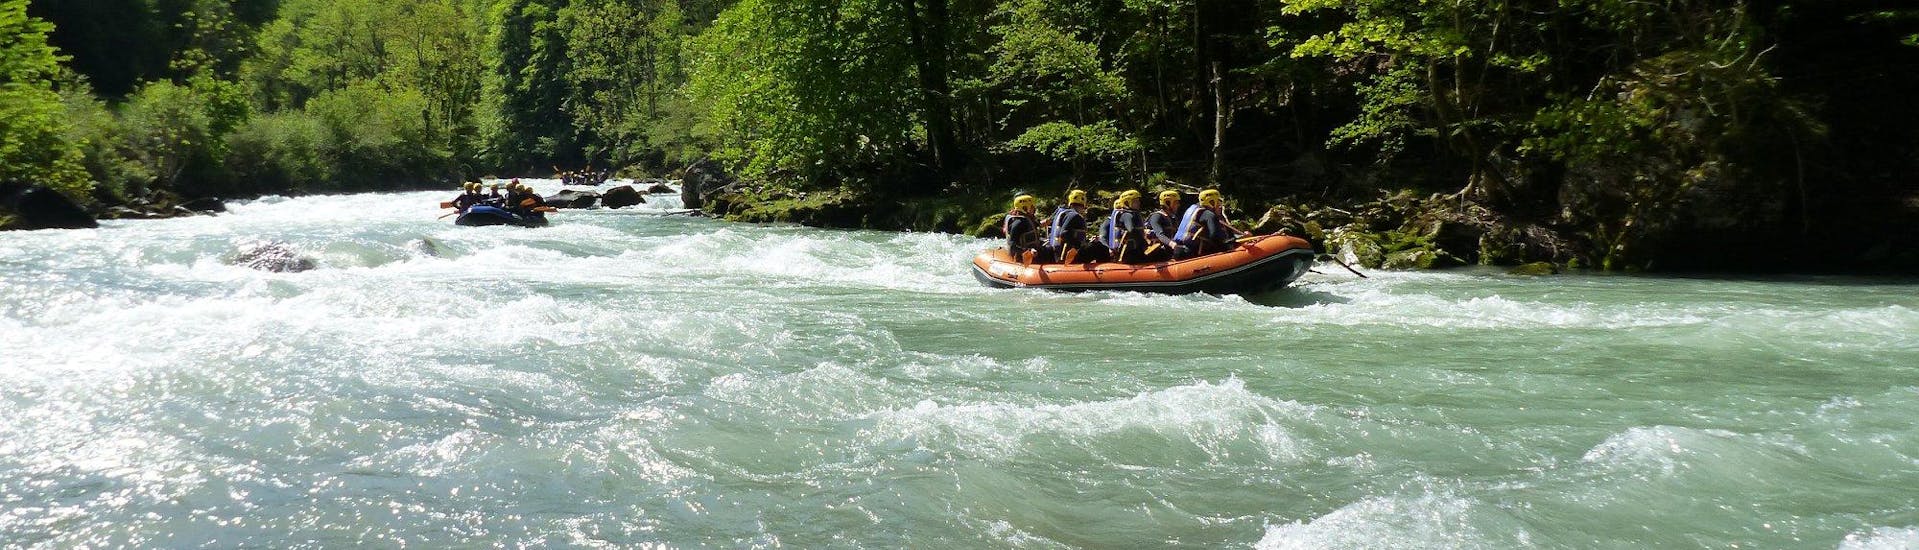 Un groupe d'amis participe à une descente Rafting sur la Dranse -  Spéciale avec AN Rafting Haute Savoie.